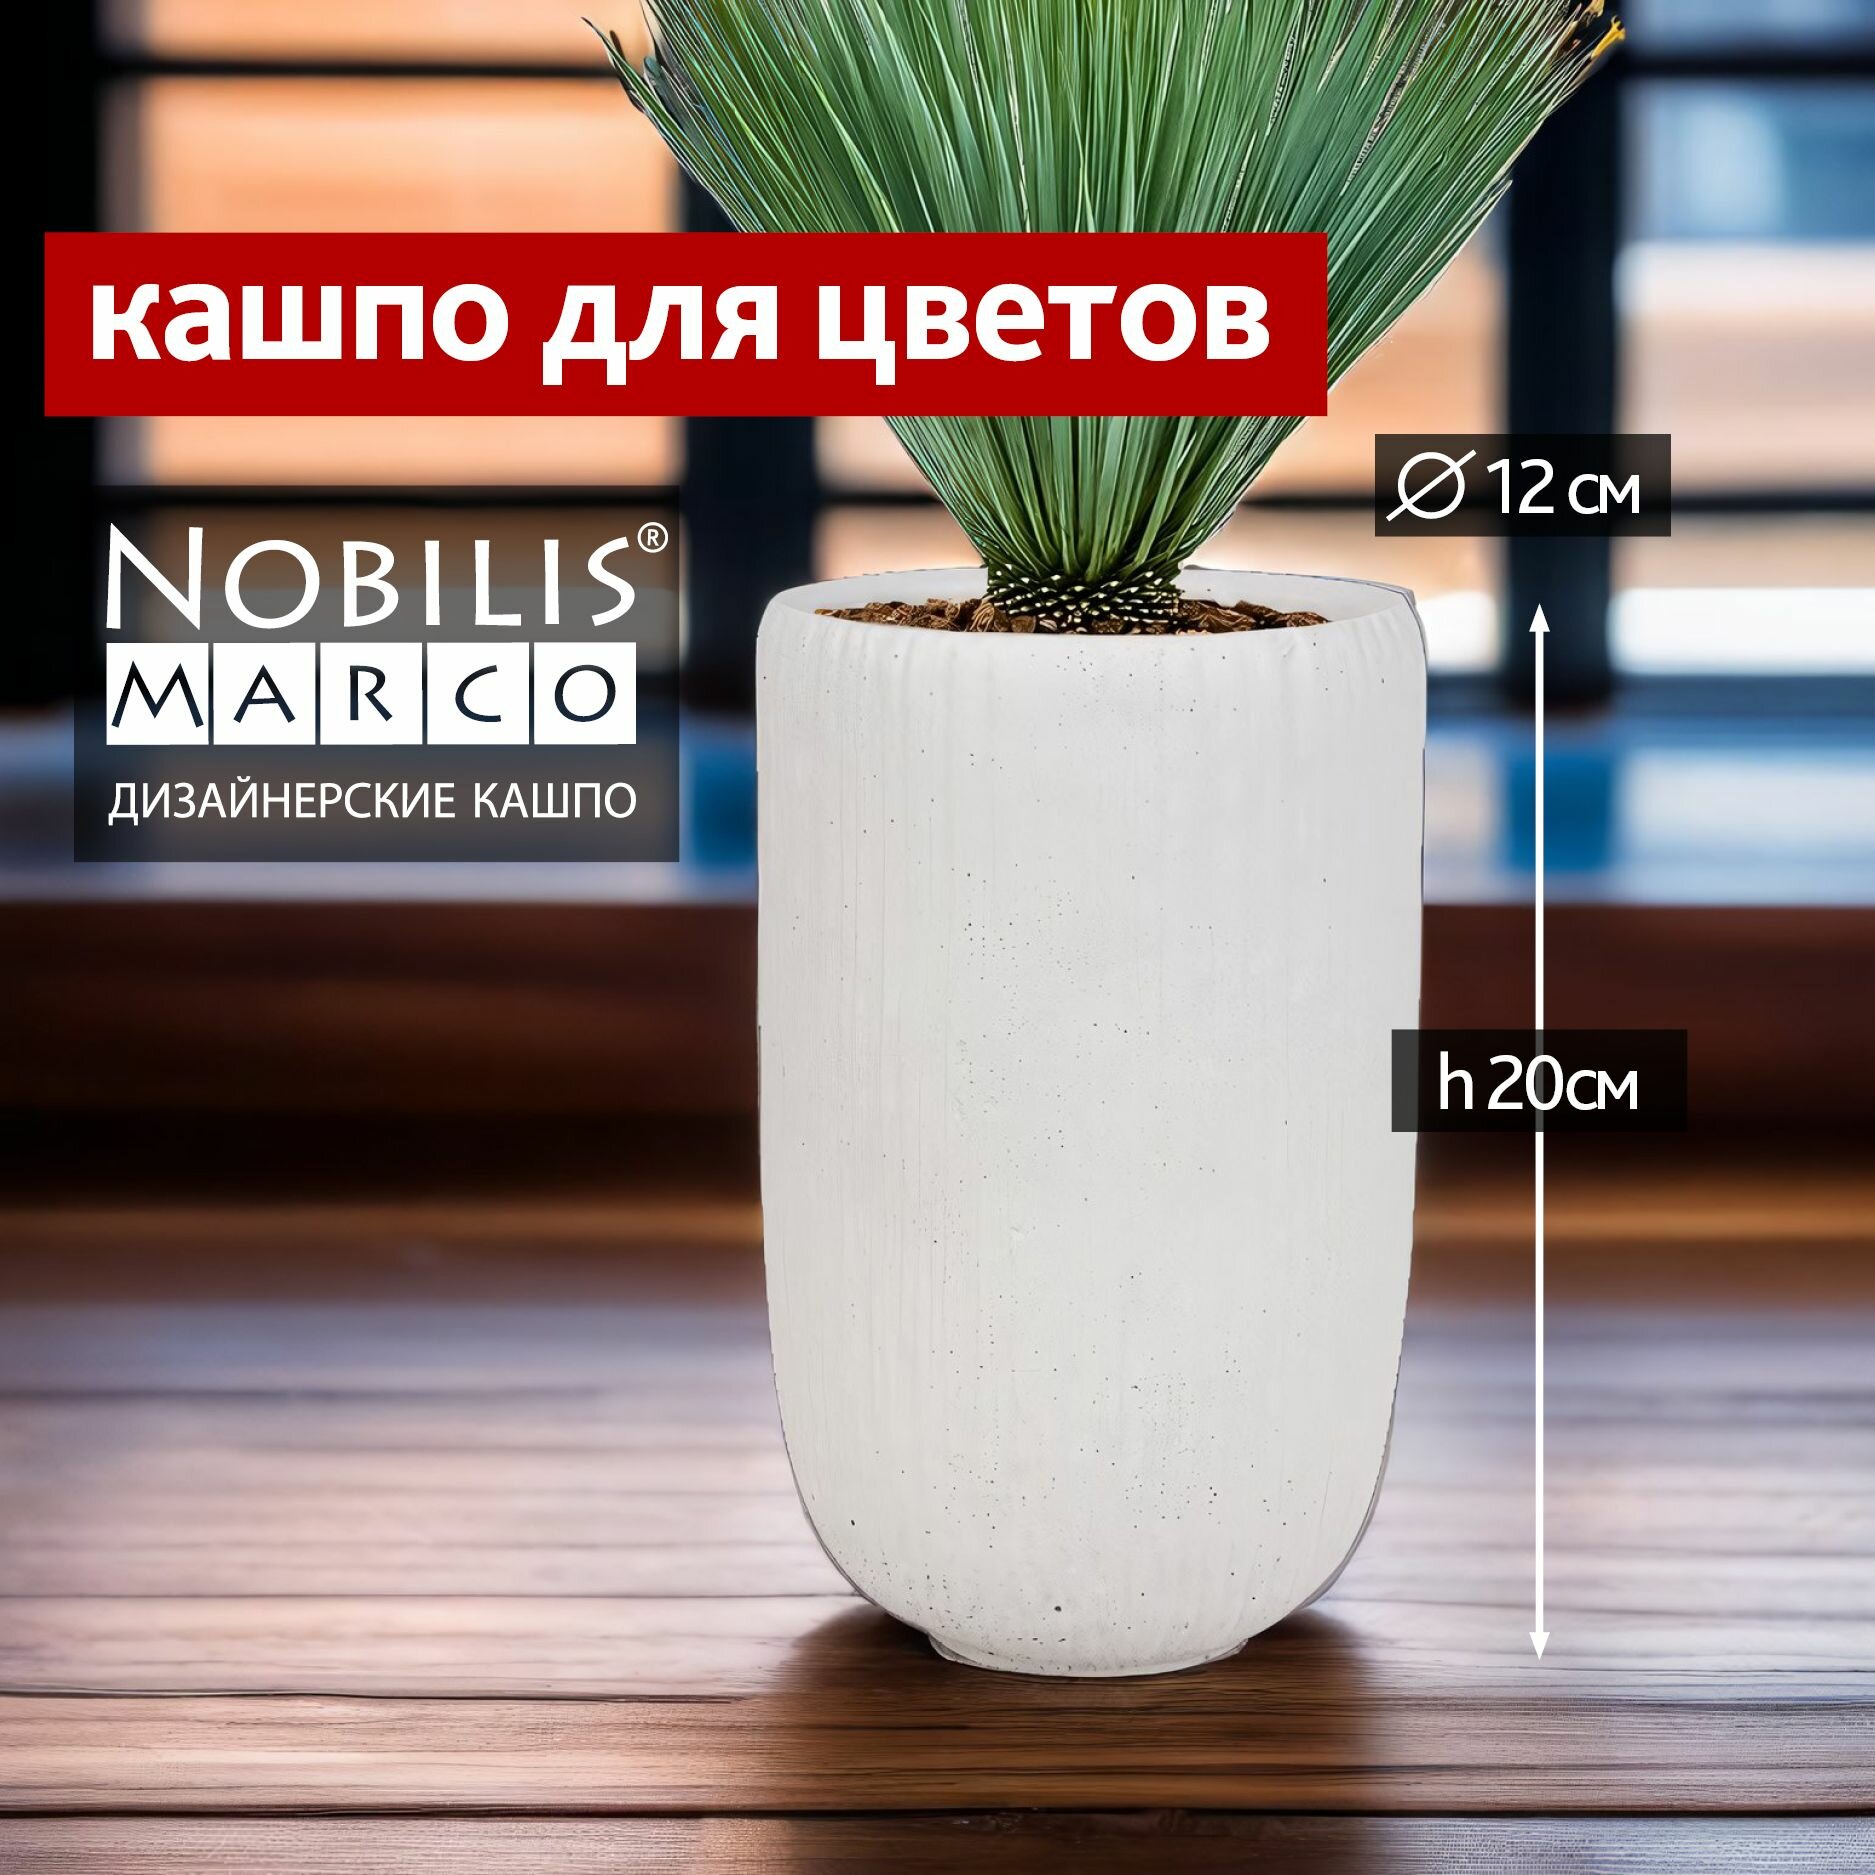 Горшок для цветов маленький Nobilis Marco Jar D12хH20 см кашпо высокое декоративное для орхидеи суккулентов кактусов фиалок